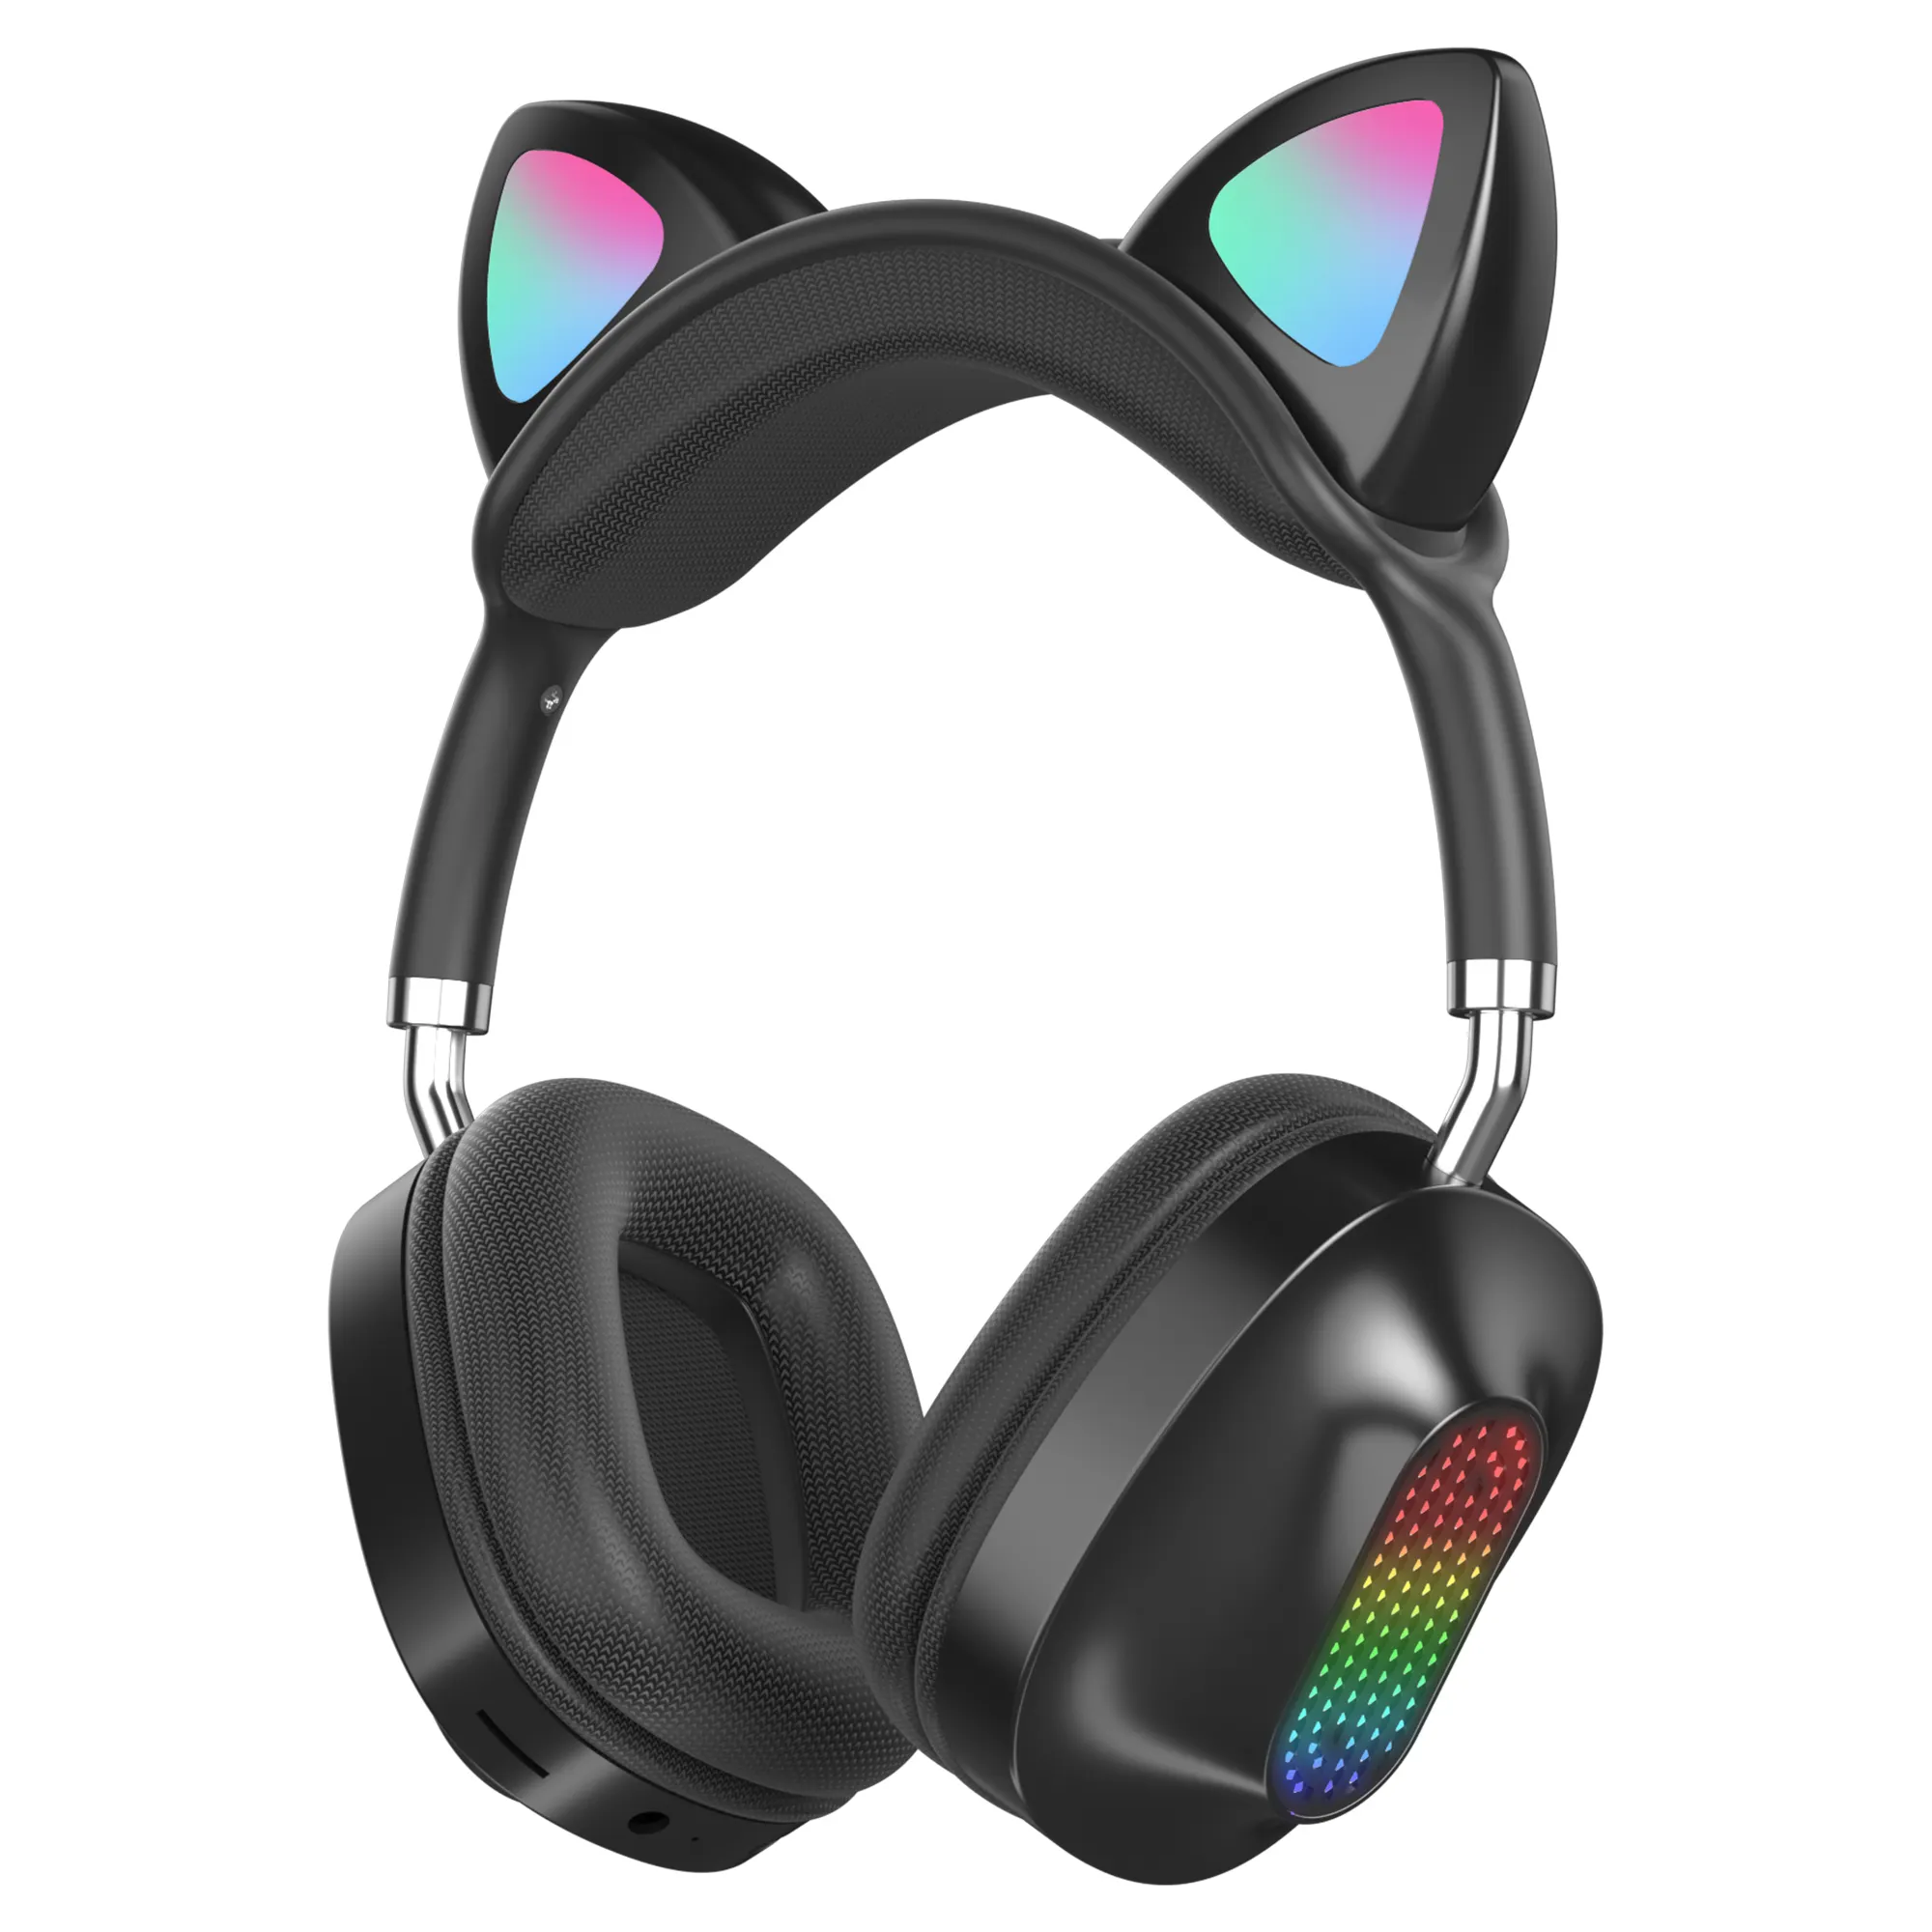 Fone de ouvido de gato bt v5.0, headset estéreo de alta qualidade com baixo custo